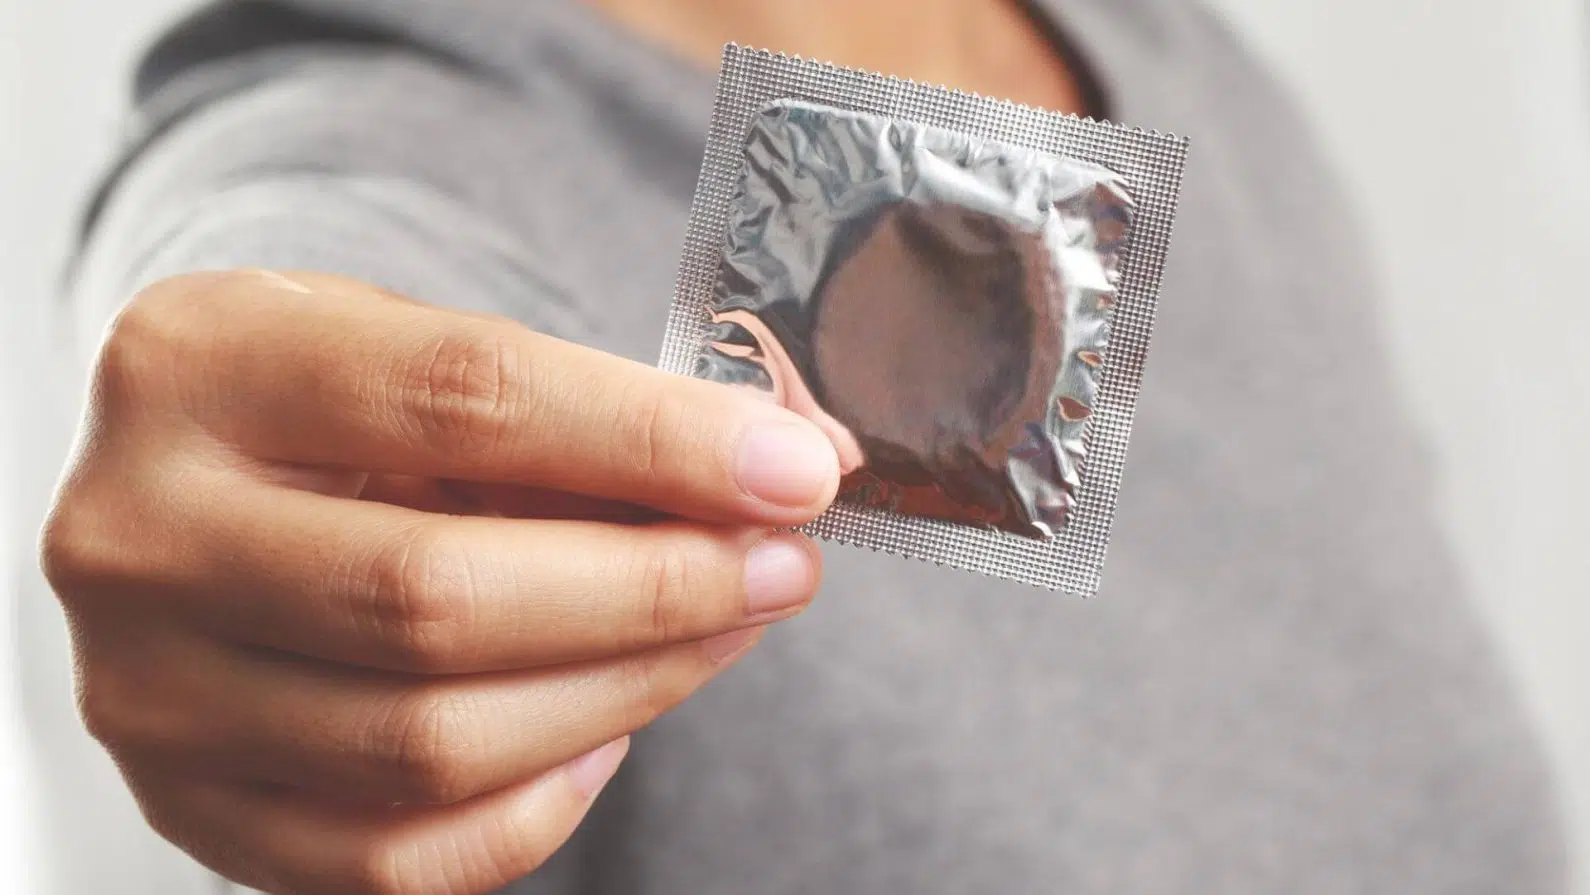 Saúde sexual e reprodutiva: informações importantes para pais e filhos